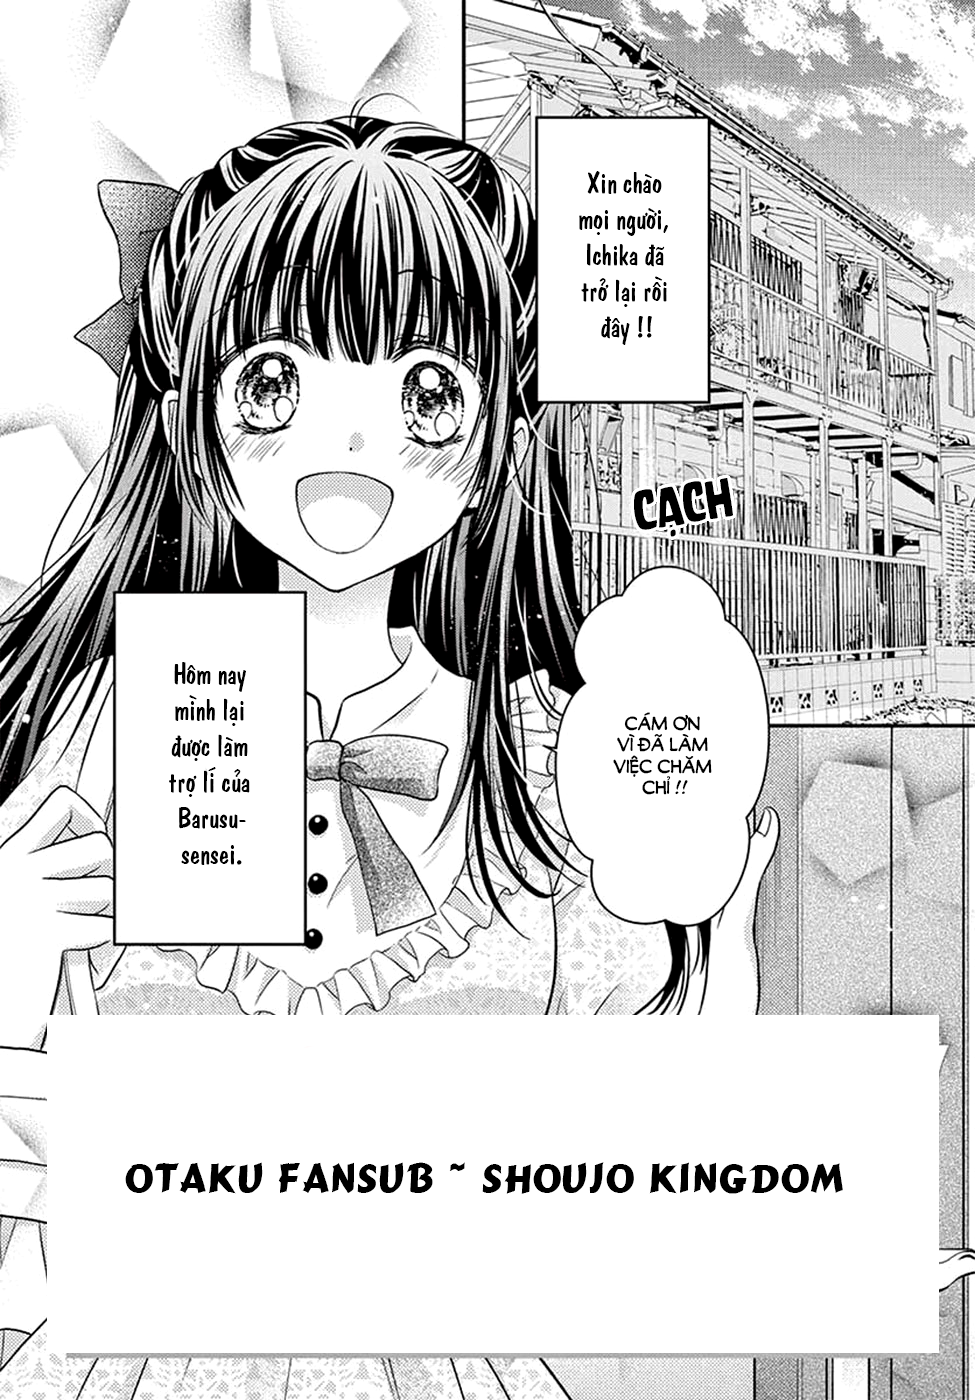 sensei 〆shimekiri made matte chap 4 otaku fansub shoujo kingdom